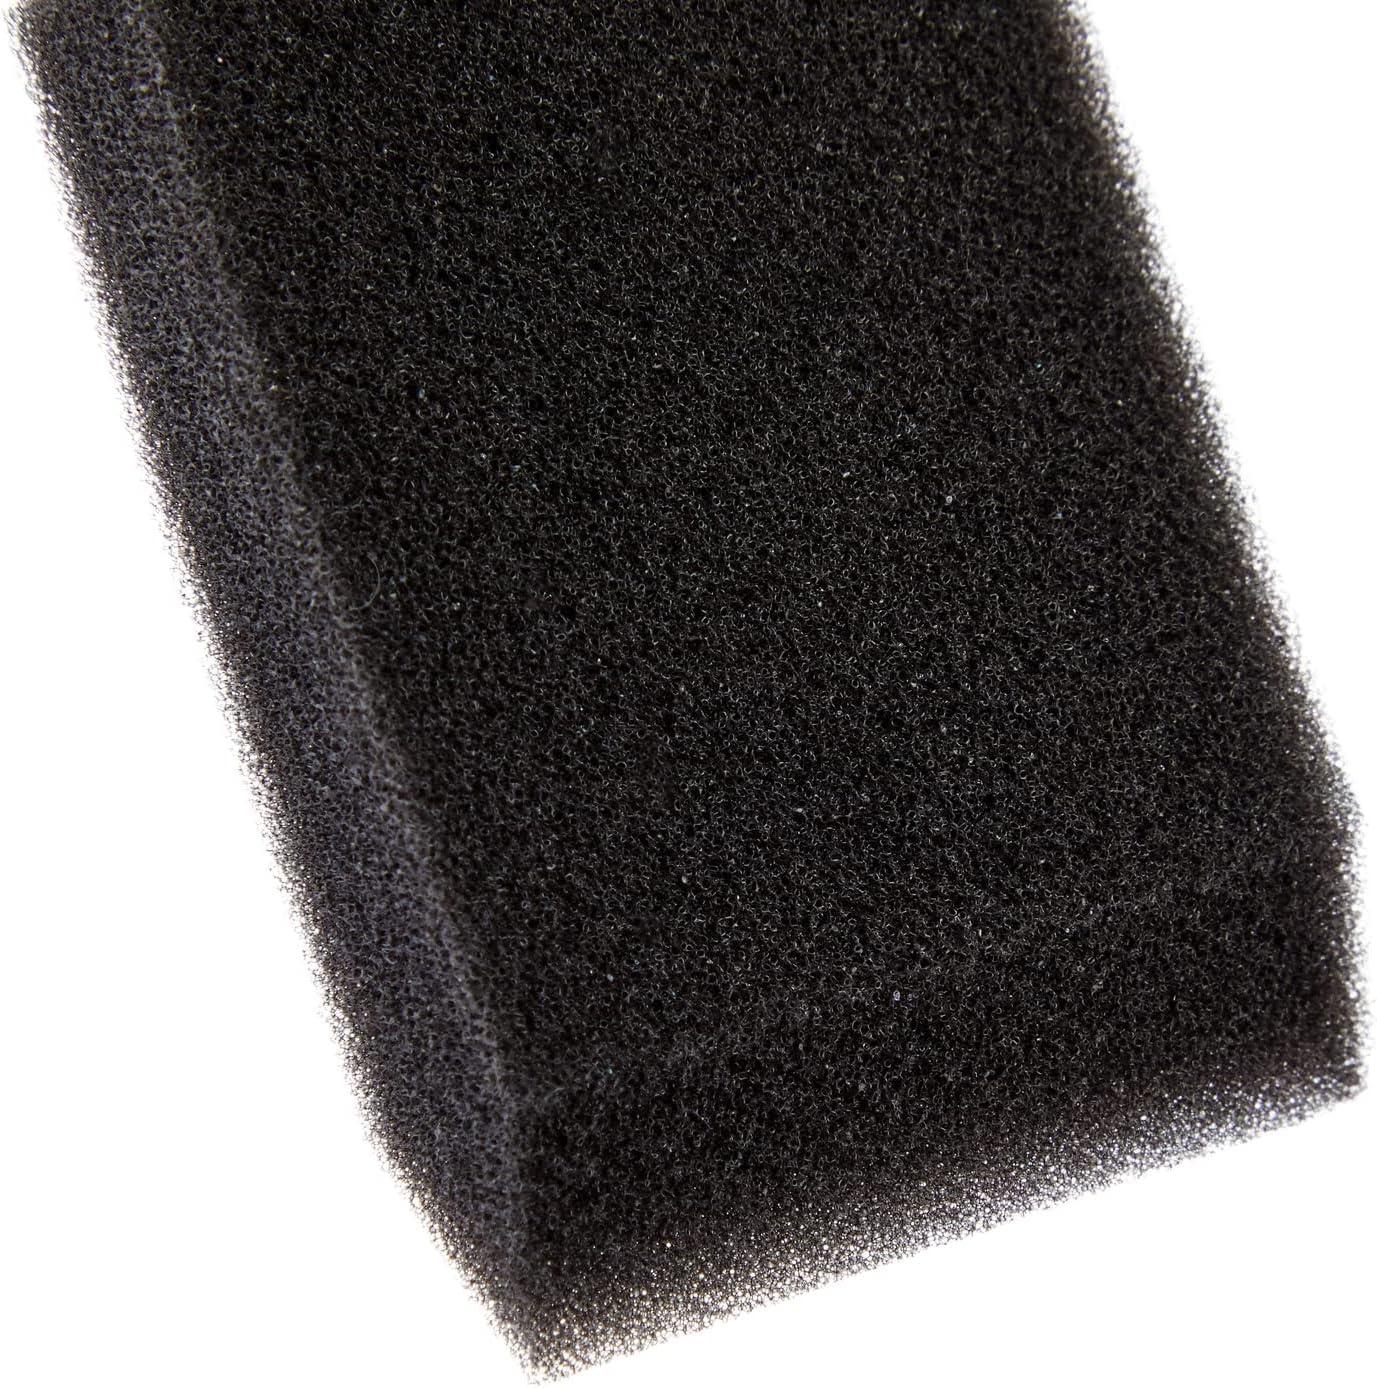 1 Paint Sponges for Painting, 50pcs Rectangle Painting Sponge Foam Brush,  Black